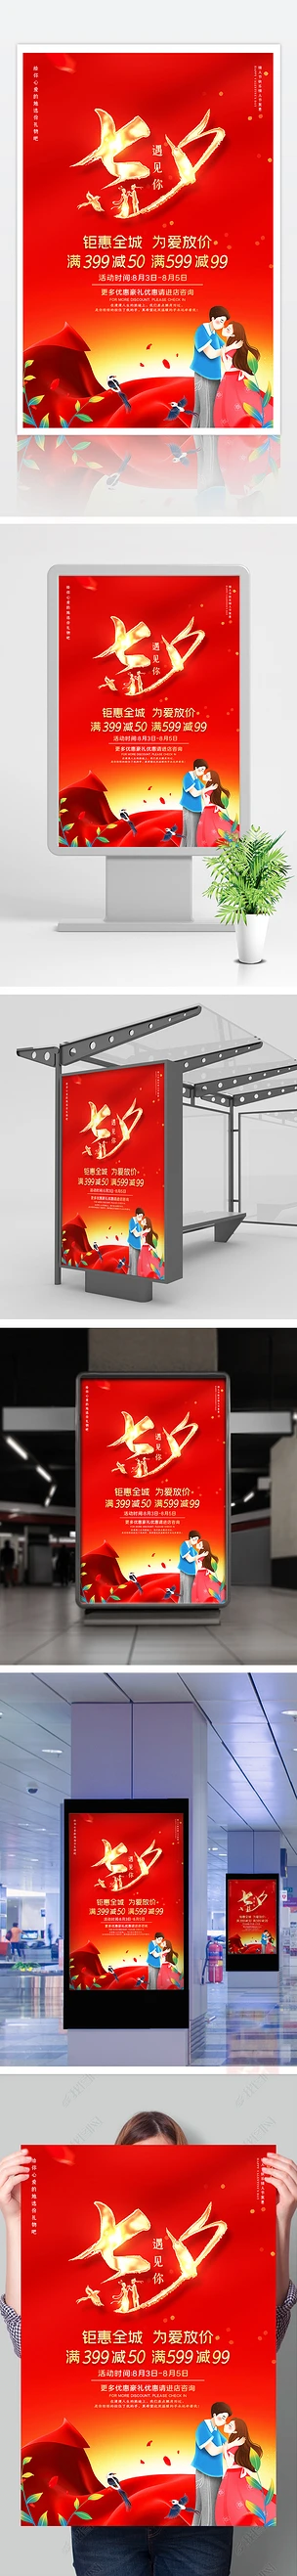 大气红色七夕情人节促销活动宣传海报设计